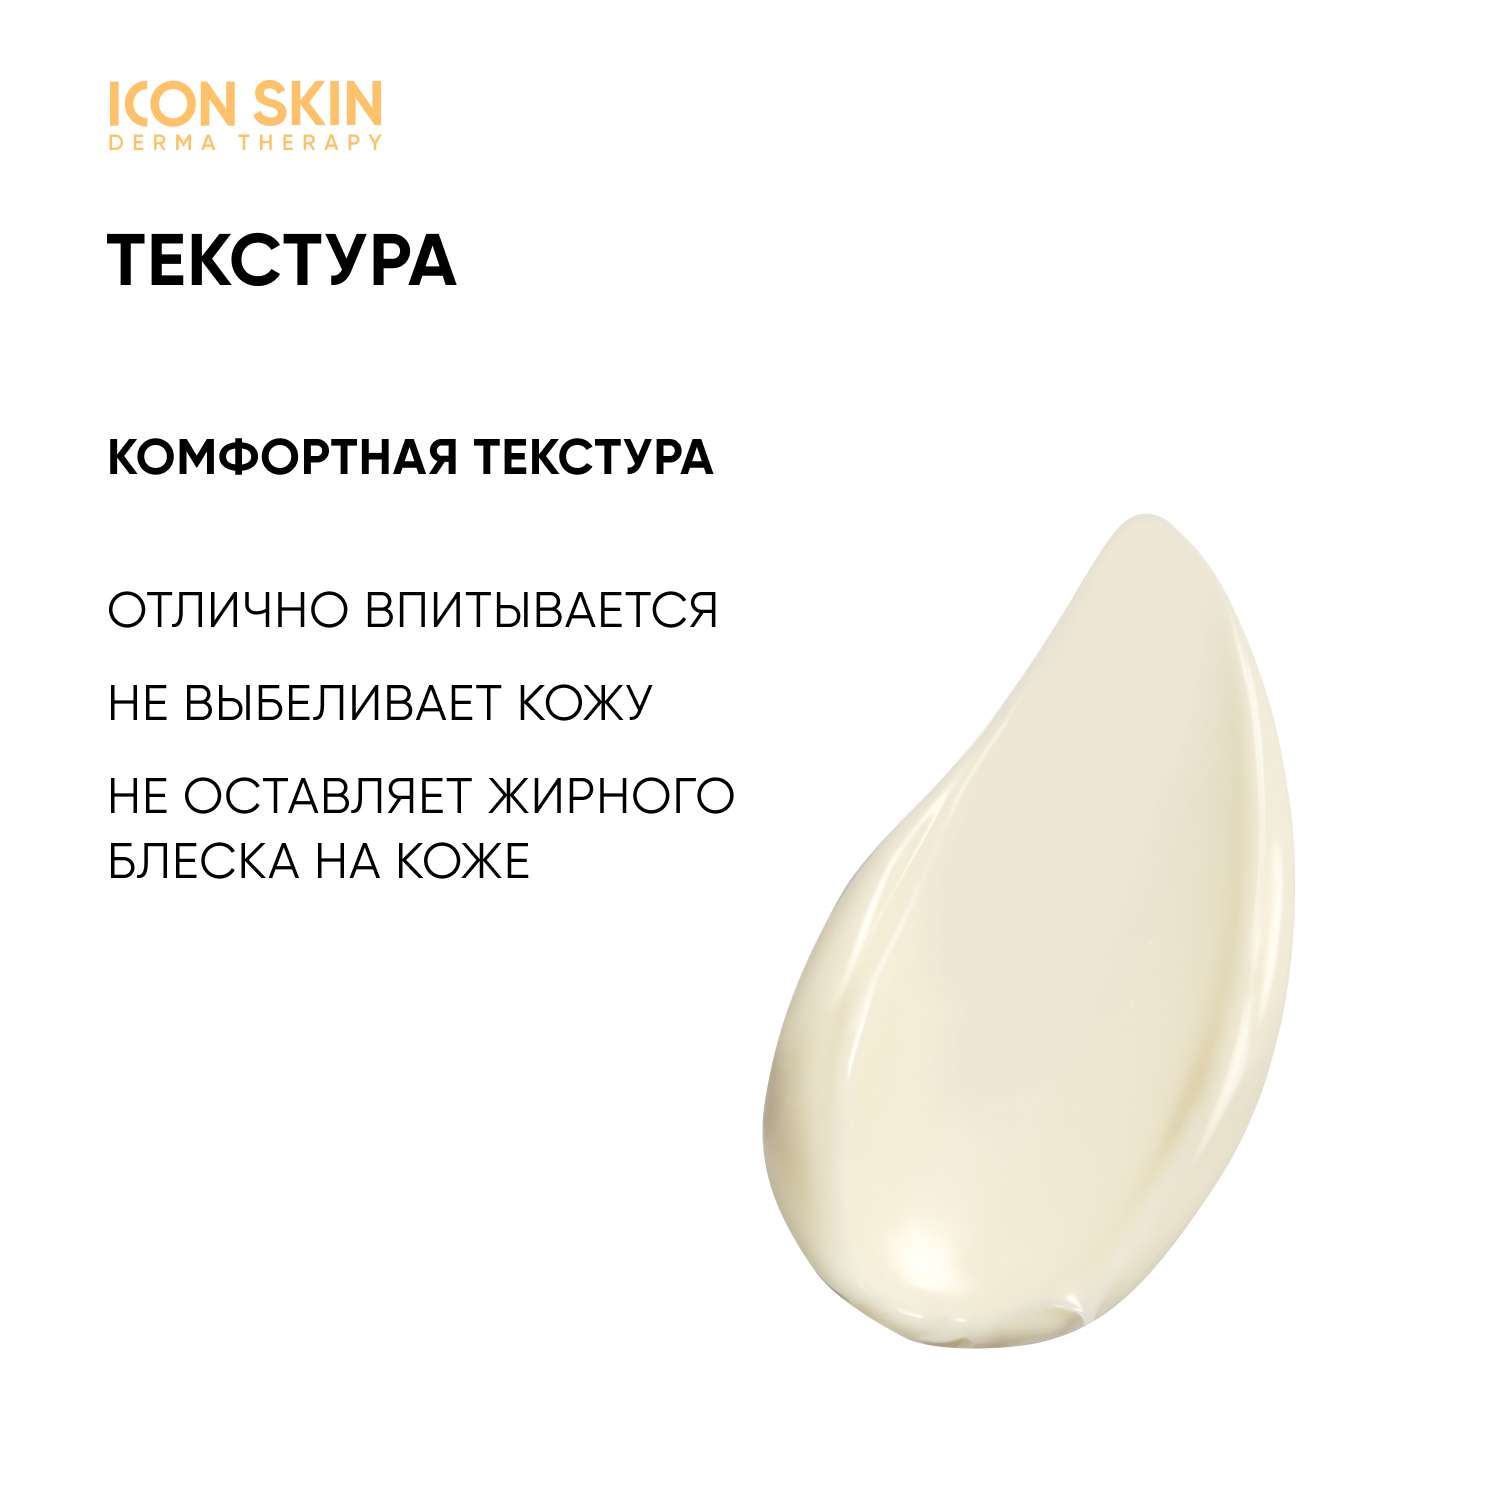 Icon skin spf